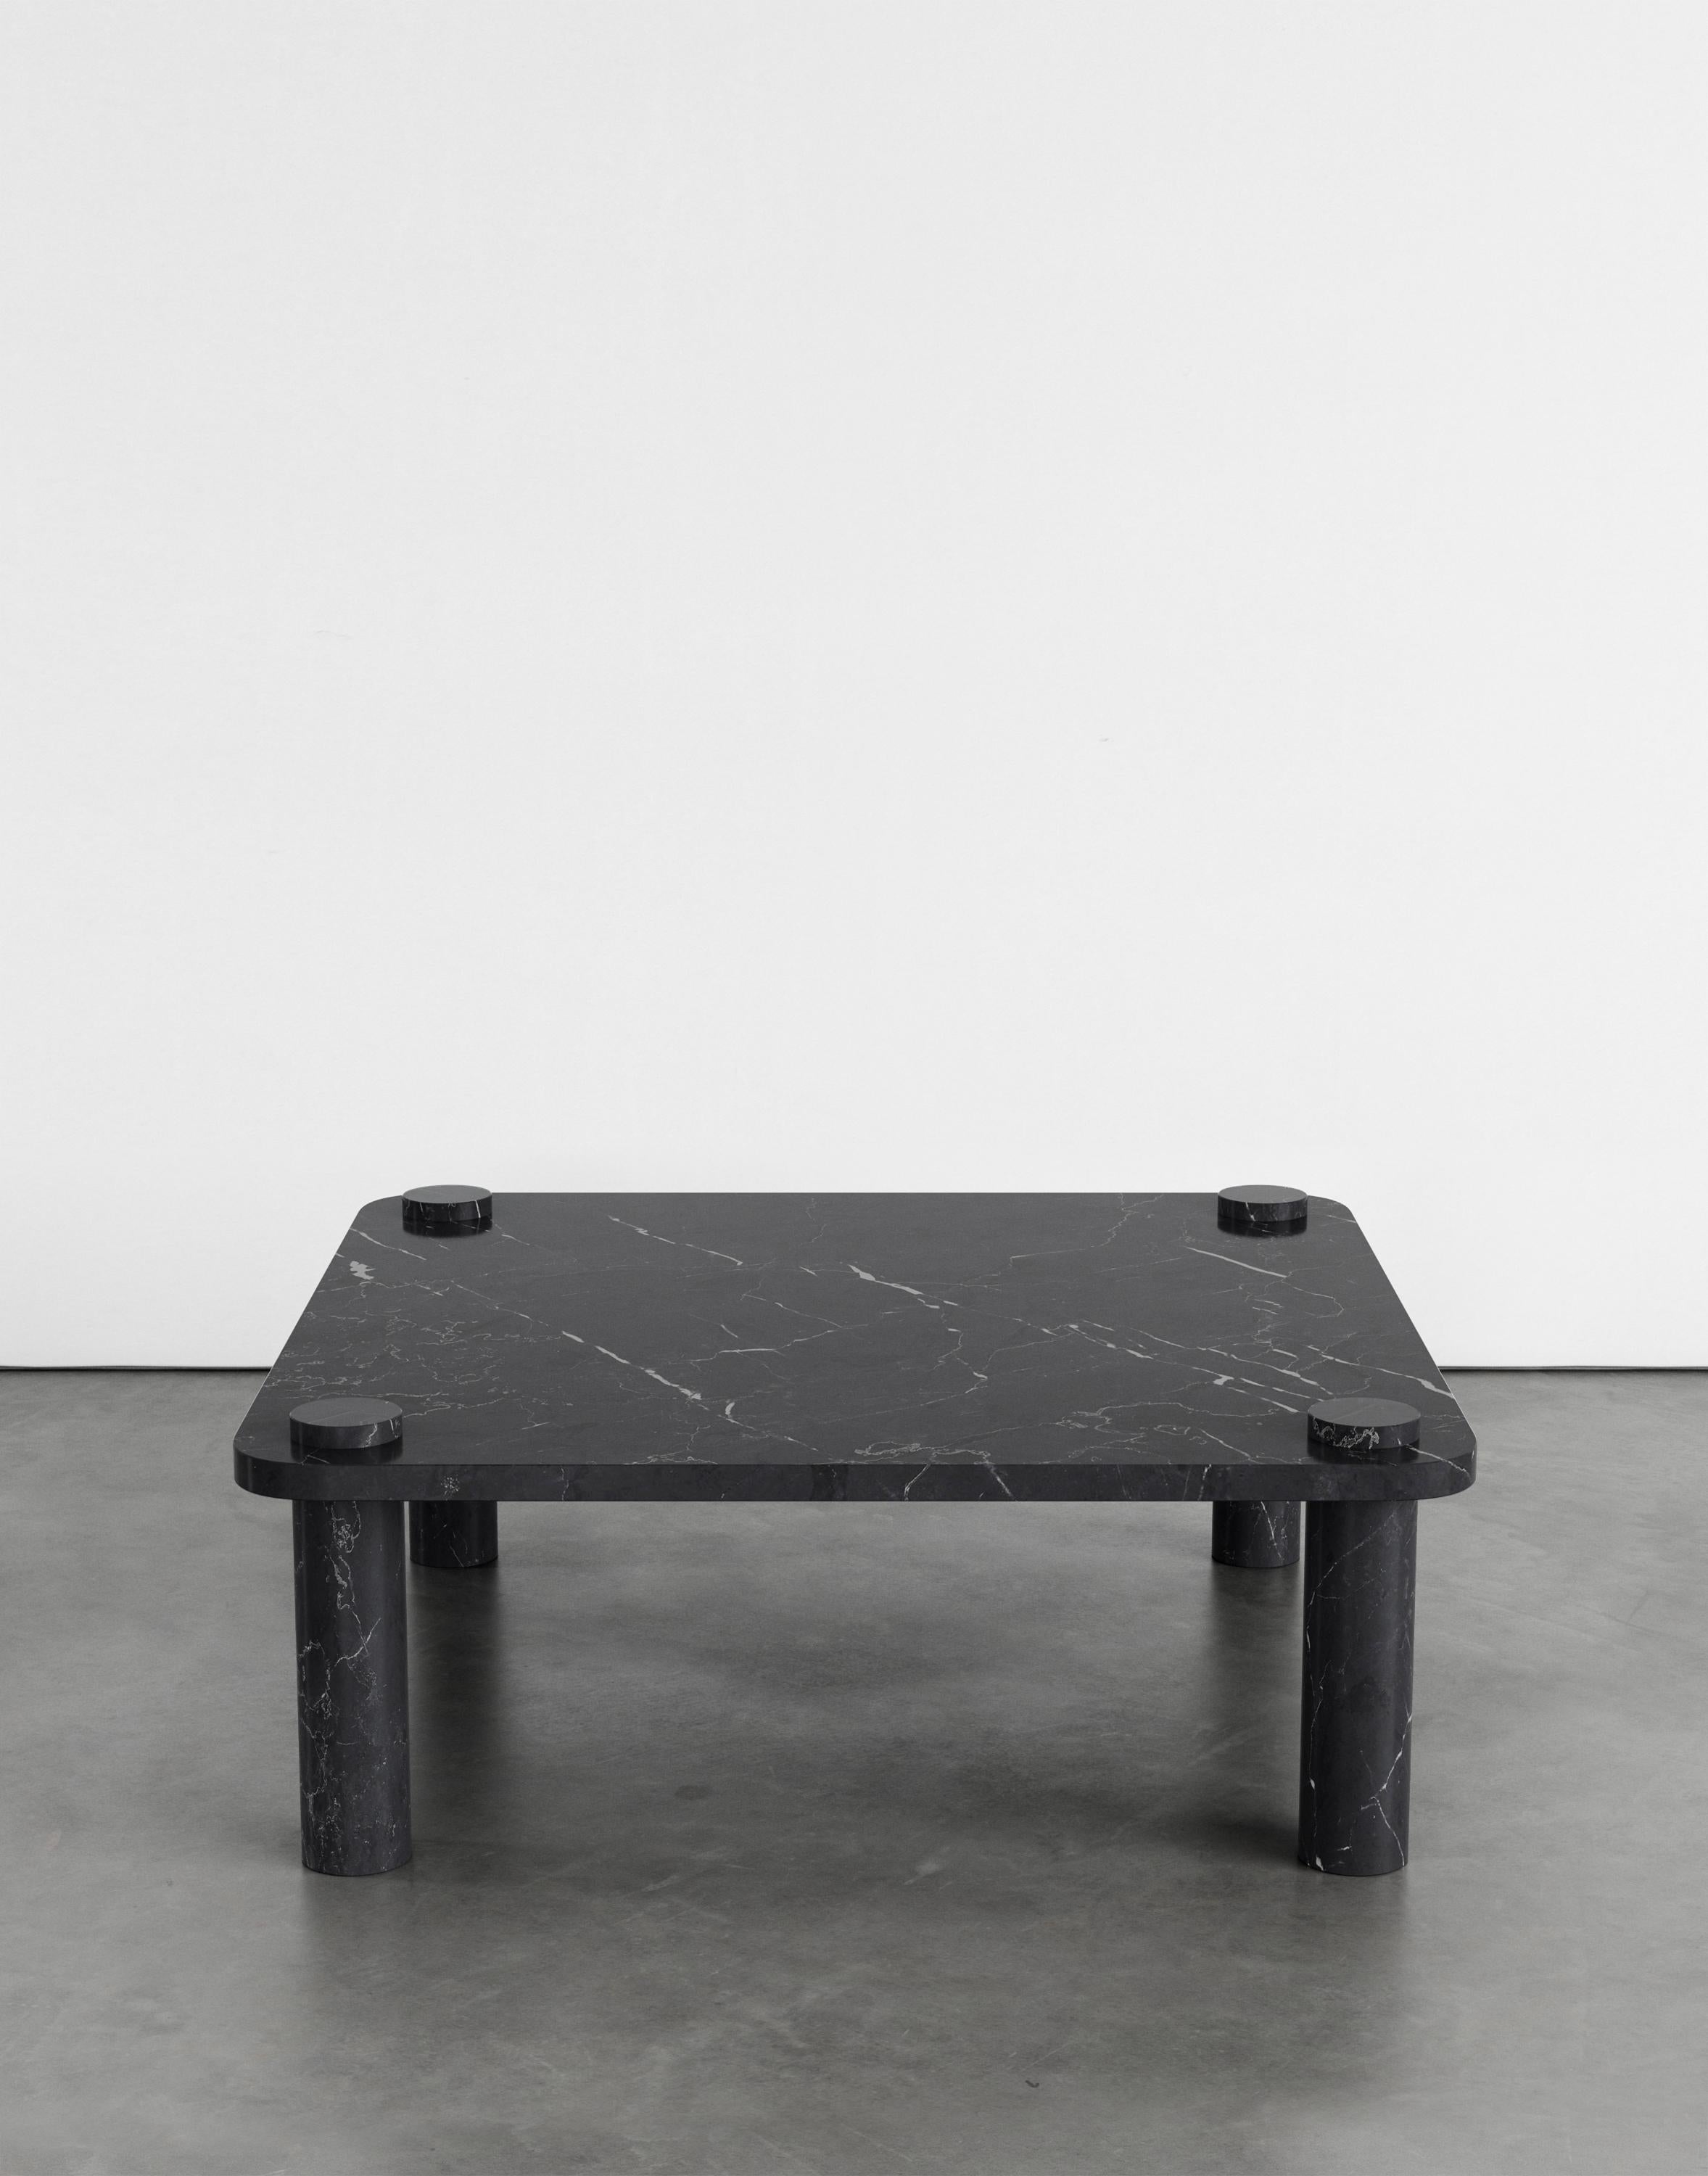 Table basse Simone 100 d'Agglomerati.
Dimensions : D 100 x L 100 x H 36 cm.
Matériaux : Marquina noir. Disponible dans d'autres pierres. 

Agglomerati est un studio basé à Londres qui crée des meubles en pierre distinctifs. Fondé en 2019 par le